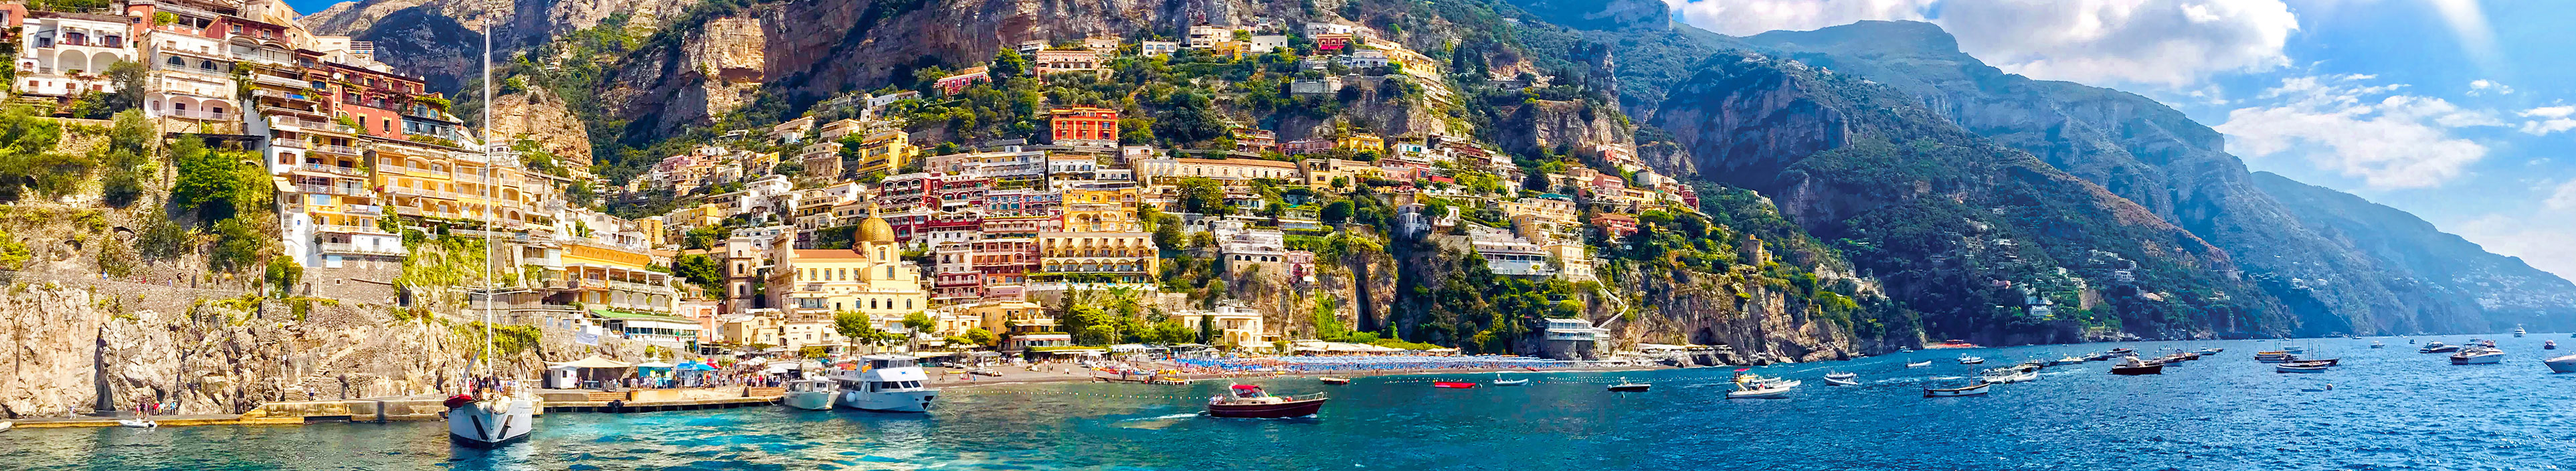 Positano, ist ein Dorf an der Amalfiküste, Salerno, Kampanien.